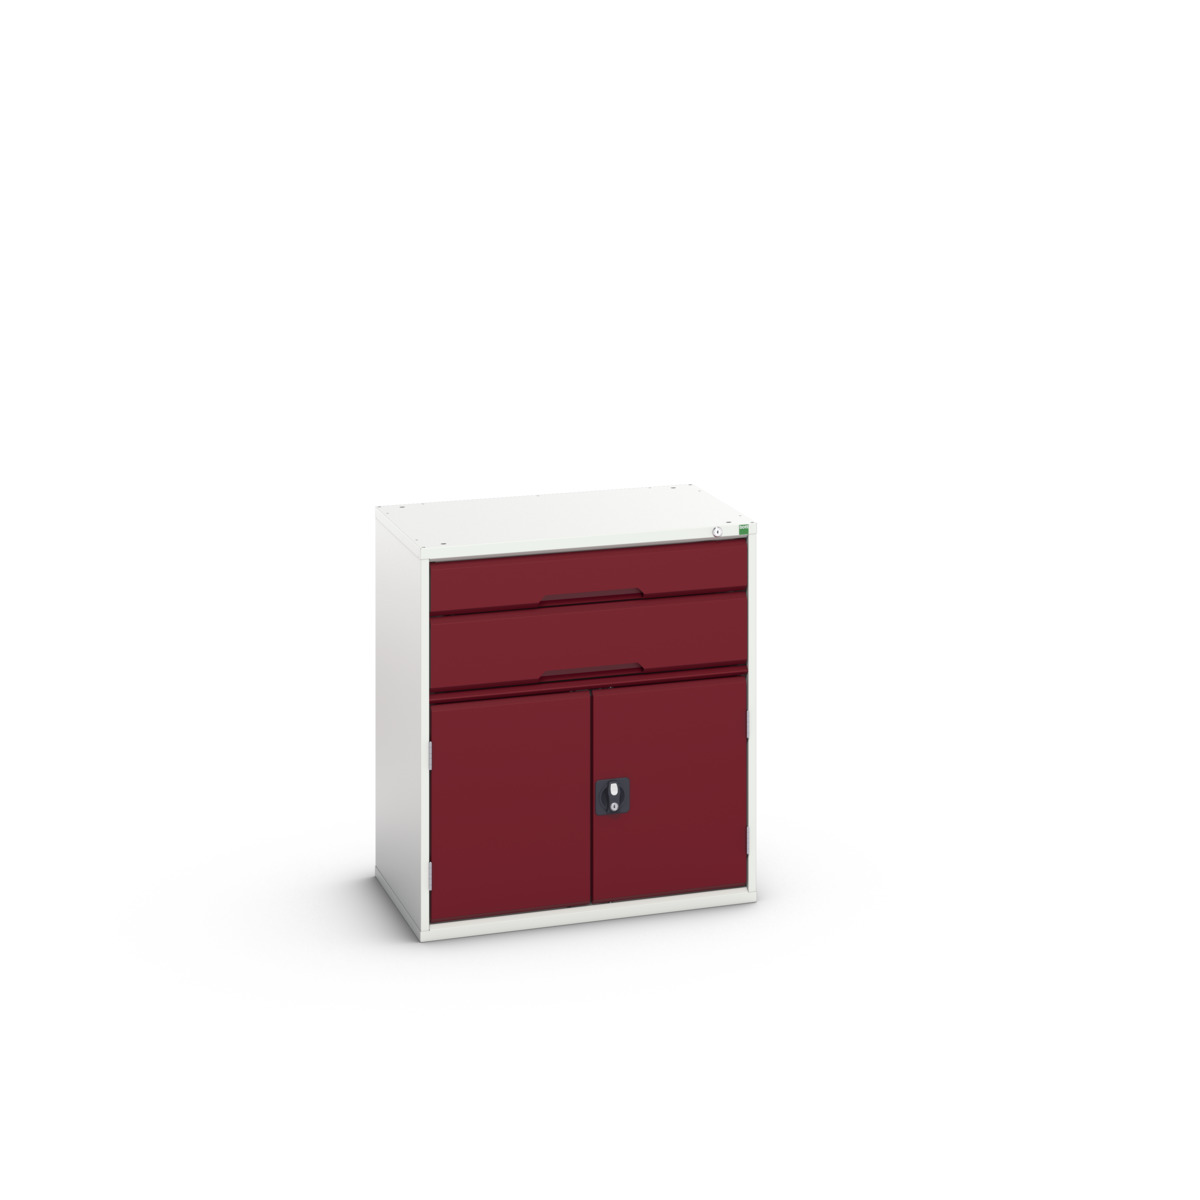 16925437.24 - verso drawer-door cabinet